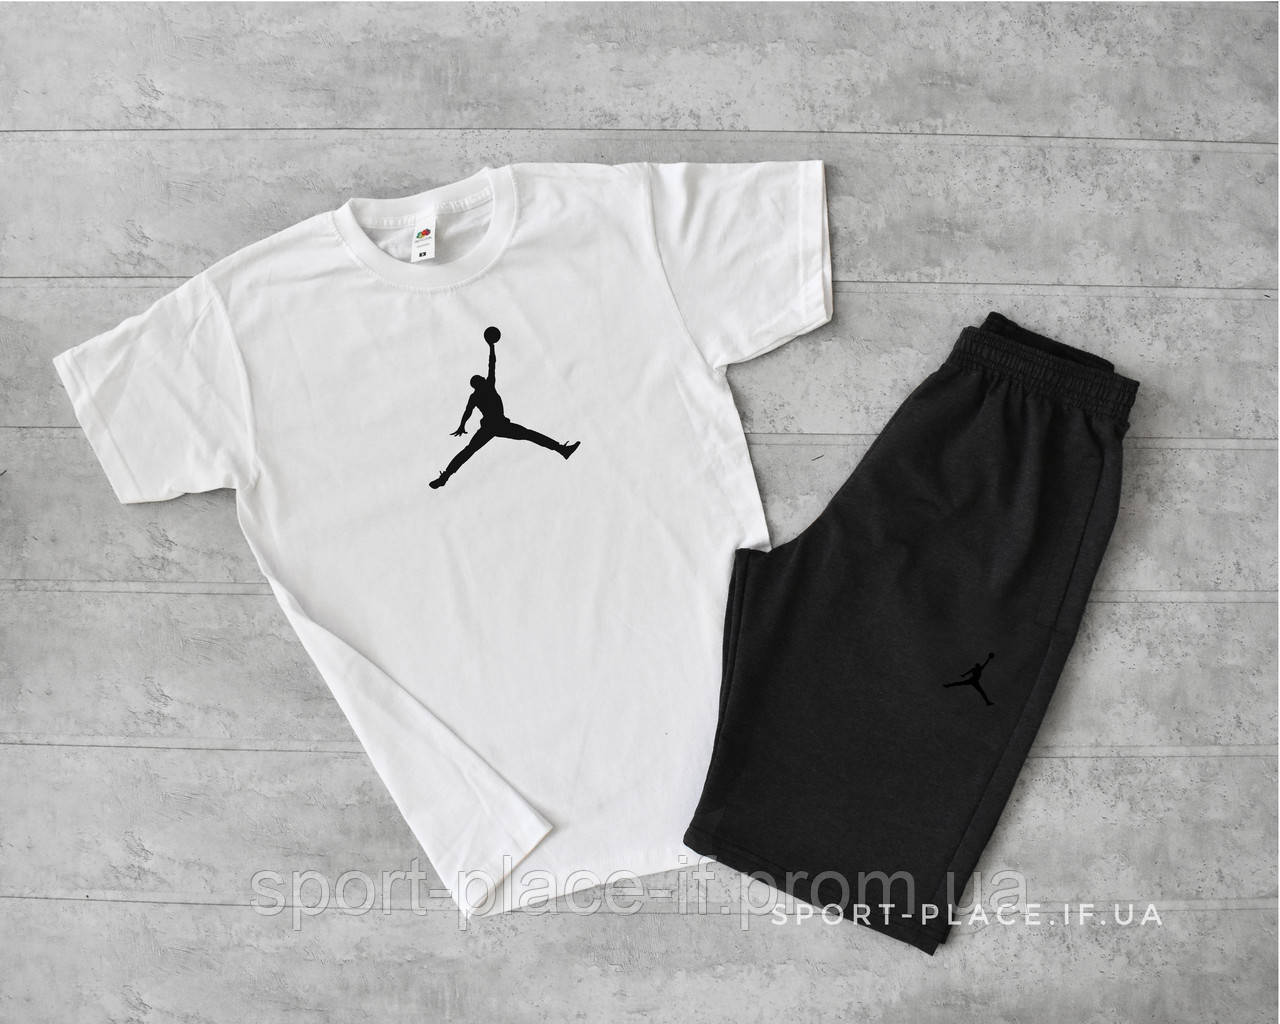 Літній комплект шорти і футболка Jordan (біла футболка , темно сірі шорти з чорним лого) великий логотип